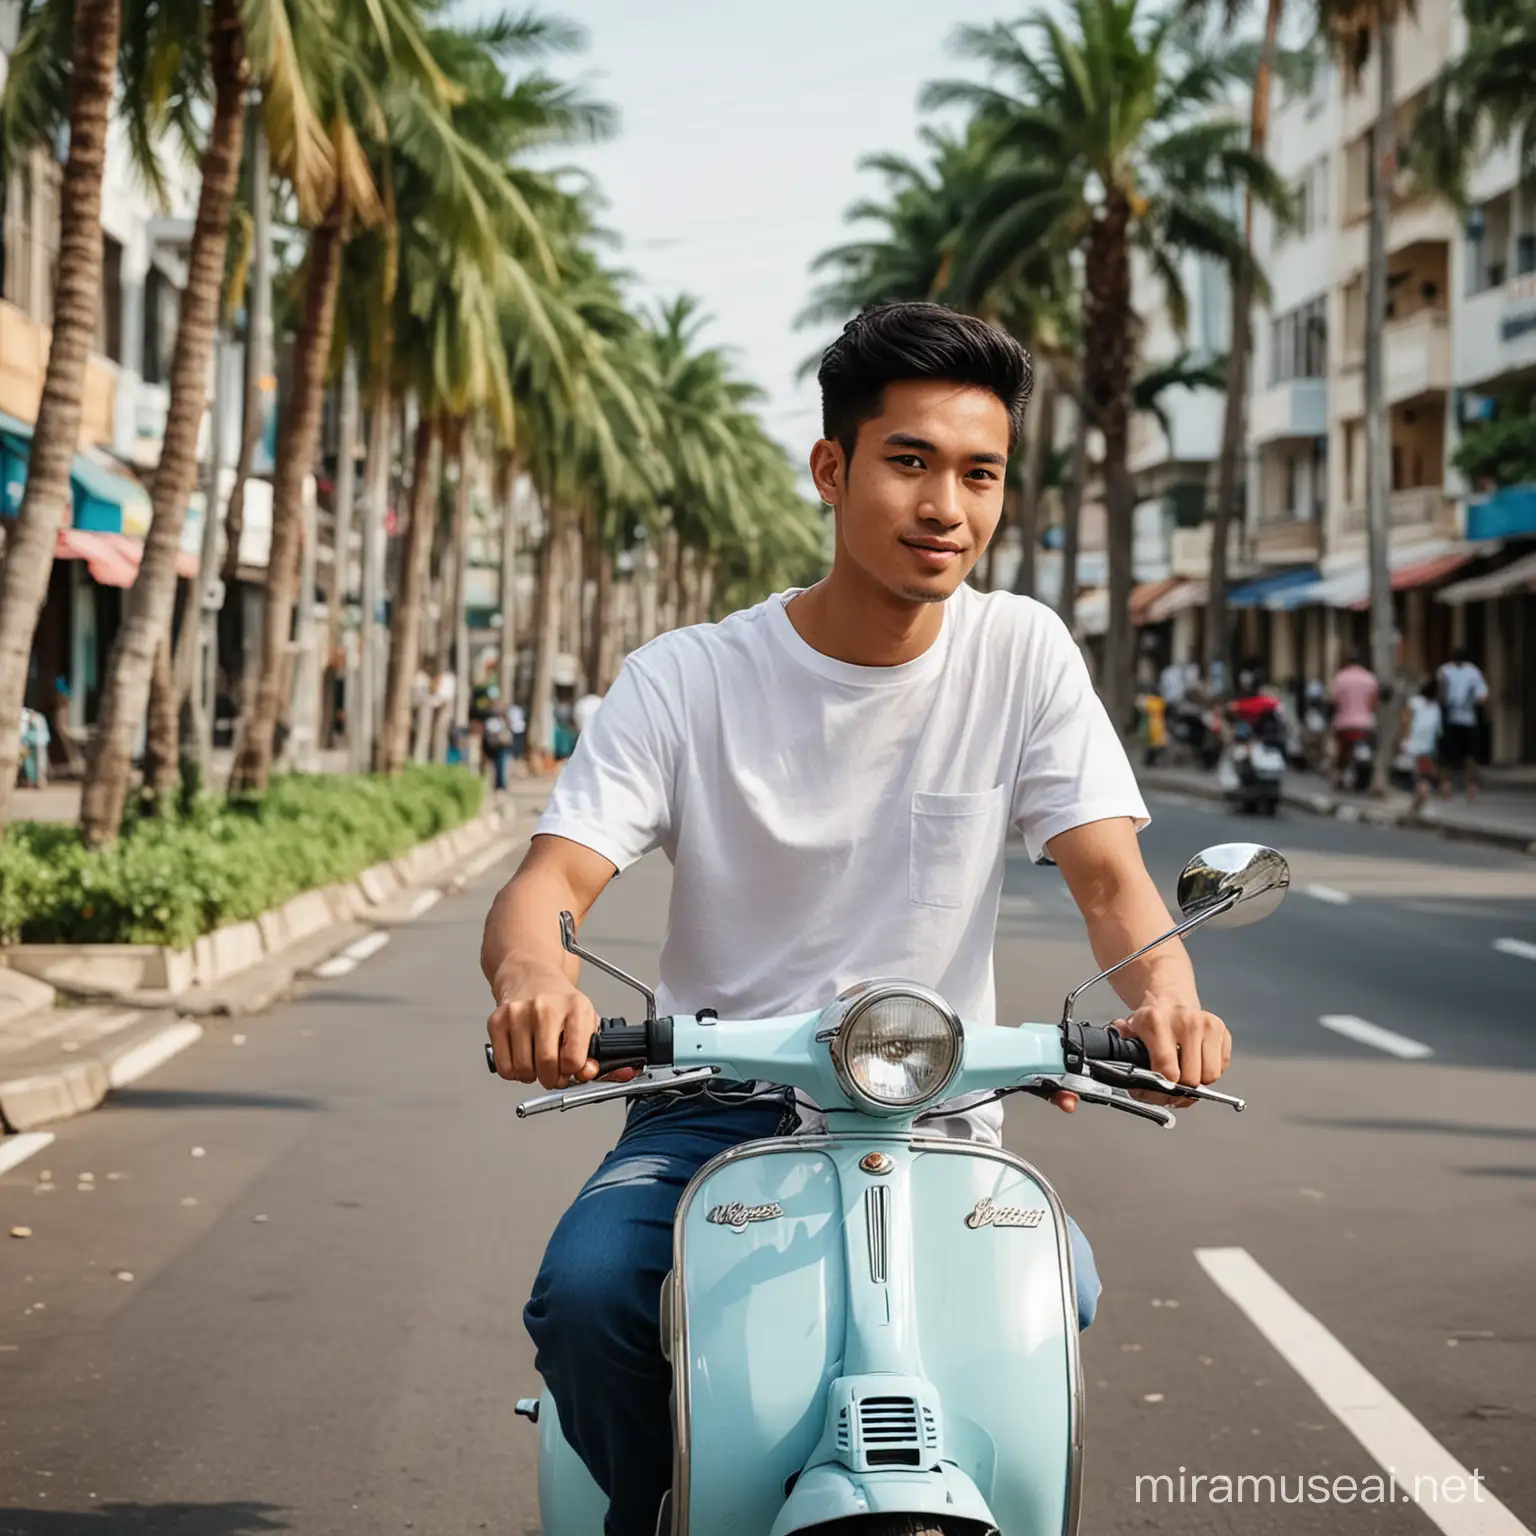 Foto pria indonesia umur 25 tahun,baju kaos putih,celana jeans sedang mengendarai vespa clasik warna putih,lokasi jalanan kota ada pohon palm di pinngir jalan